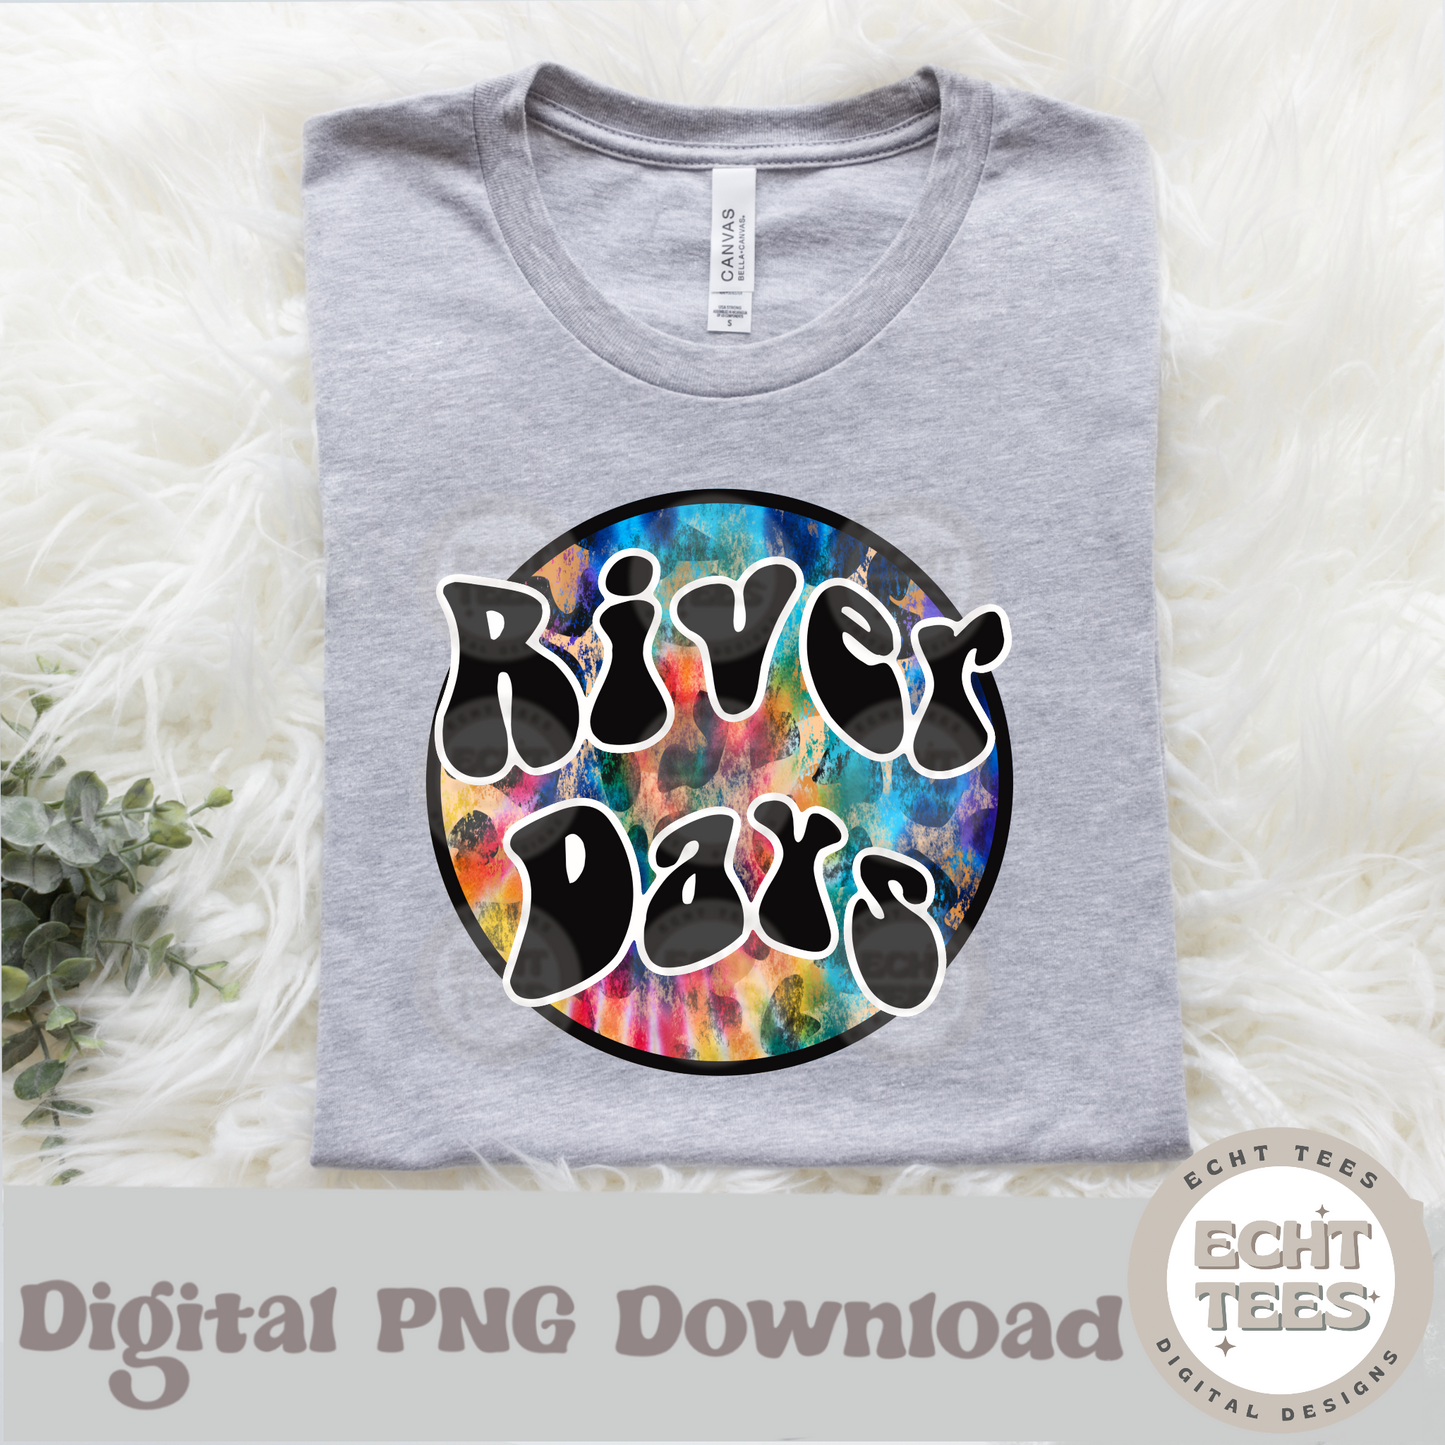 River days PNG Digital Download